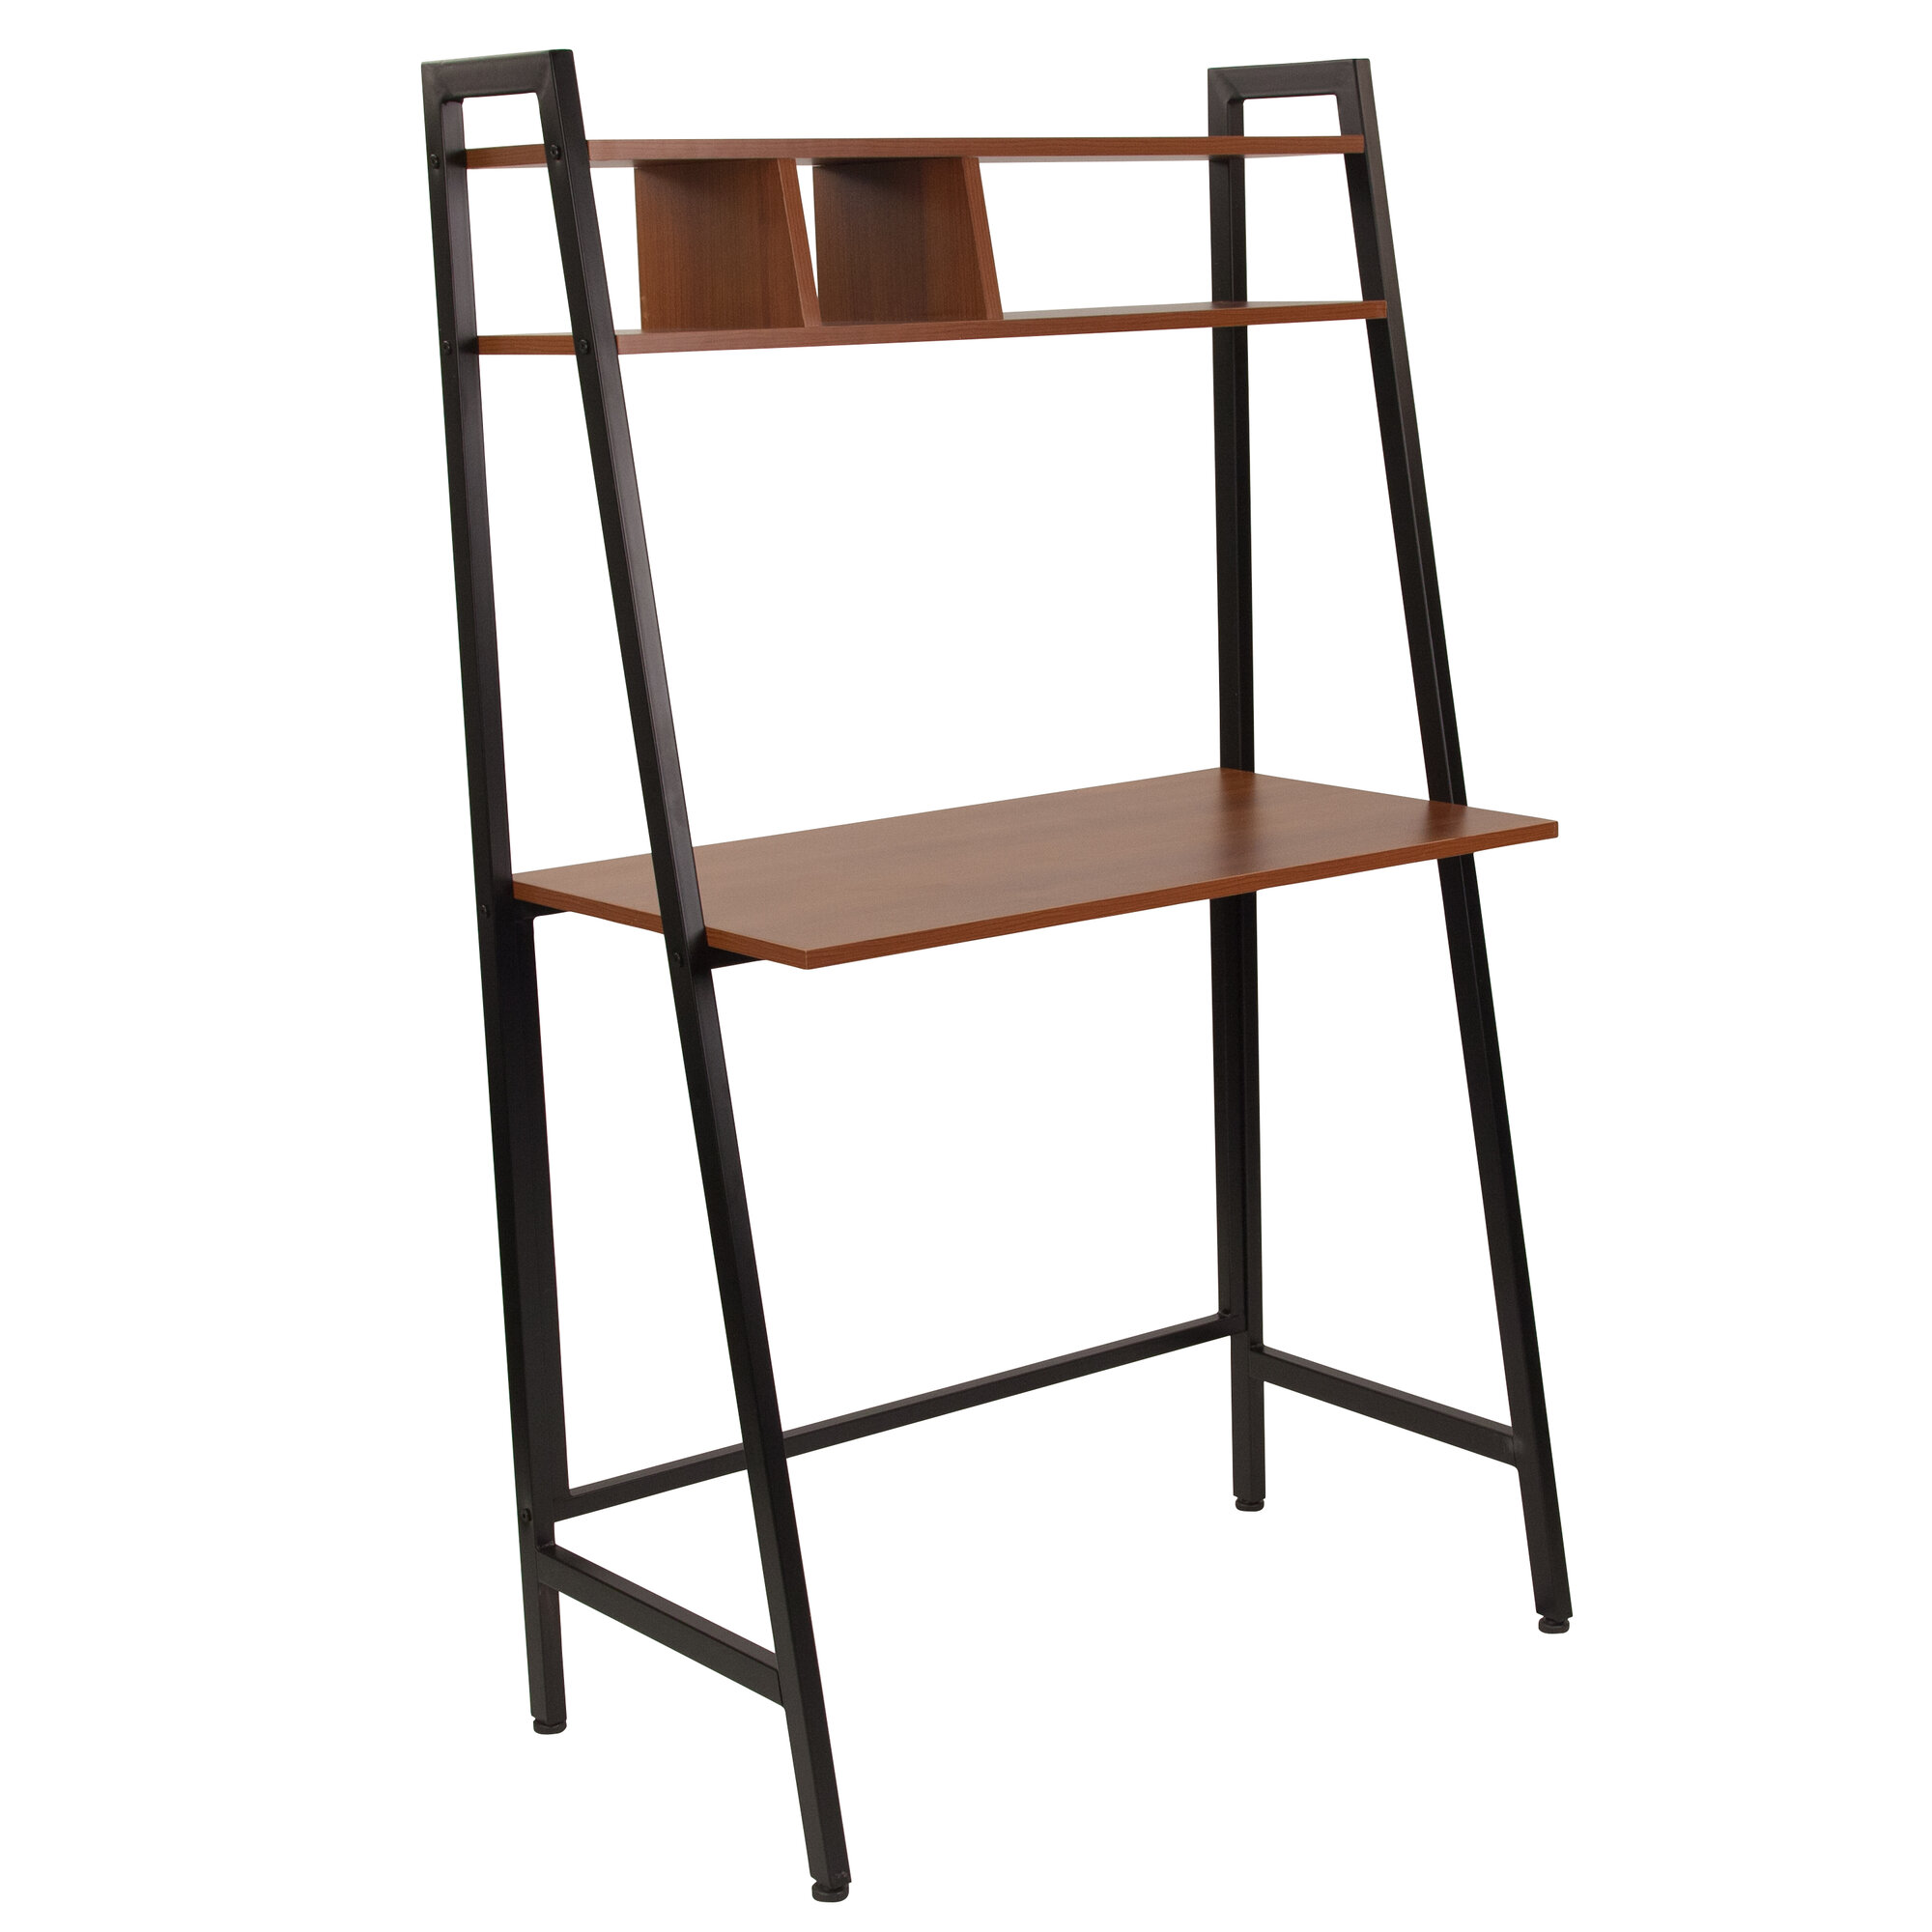 Williston Forge Cowie Ladder Desk 192452607736 Ebay